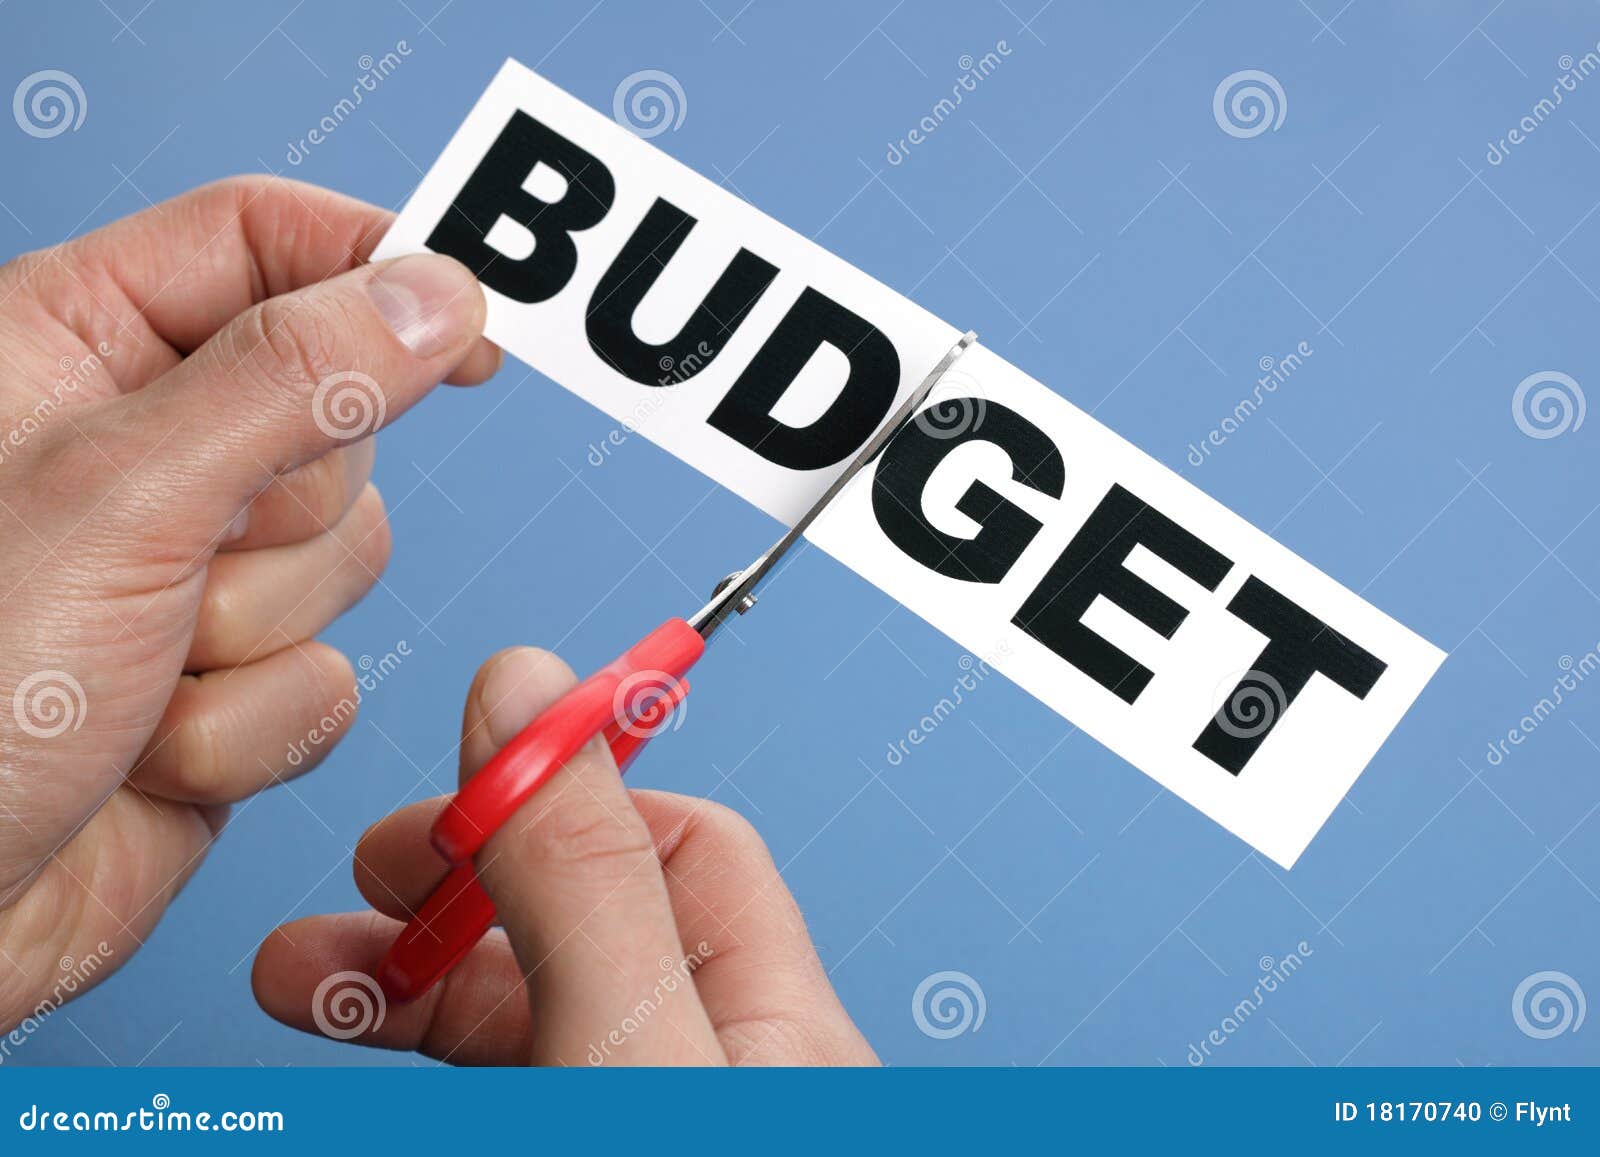 budget cuts